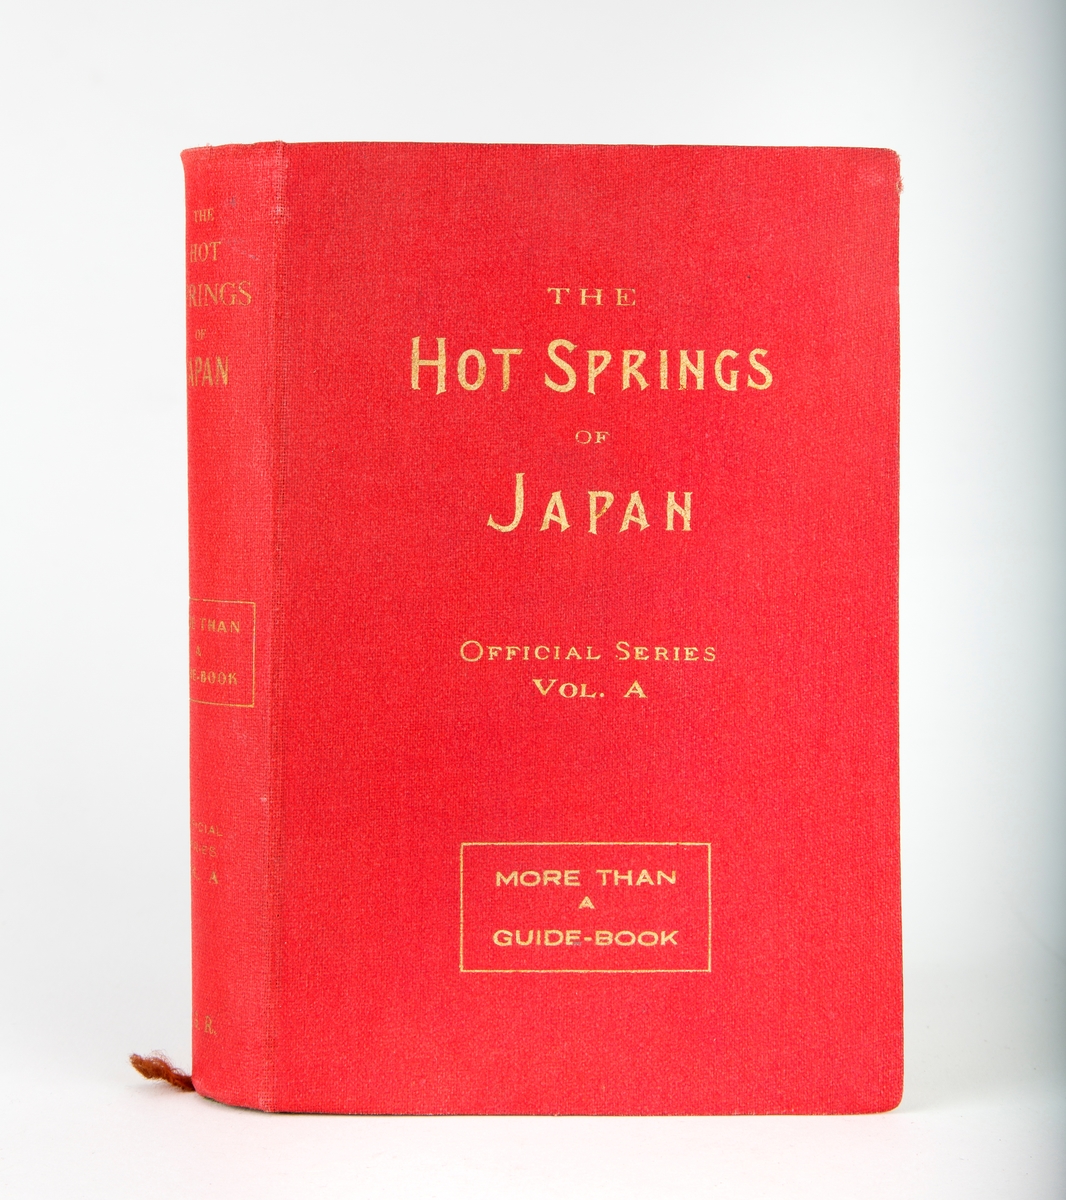 Rød bok. Tittel:"The Hot Springs of Japan. Official Series Vol. A More Than A Guide-Book".  Ingen forfatter oppgitt. Er mer som et oppslagsverk.